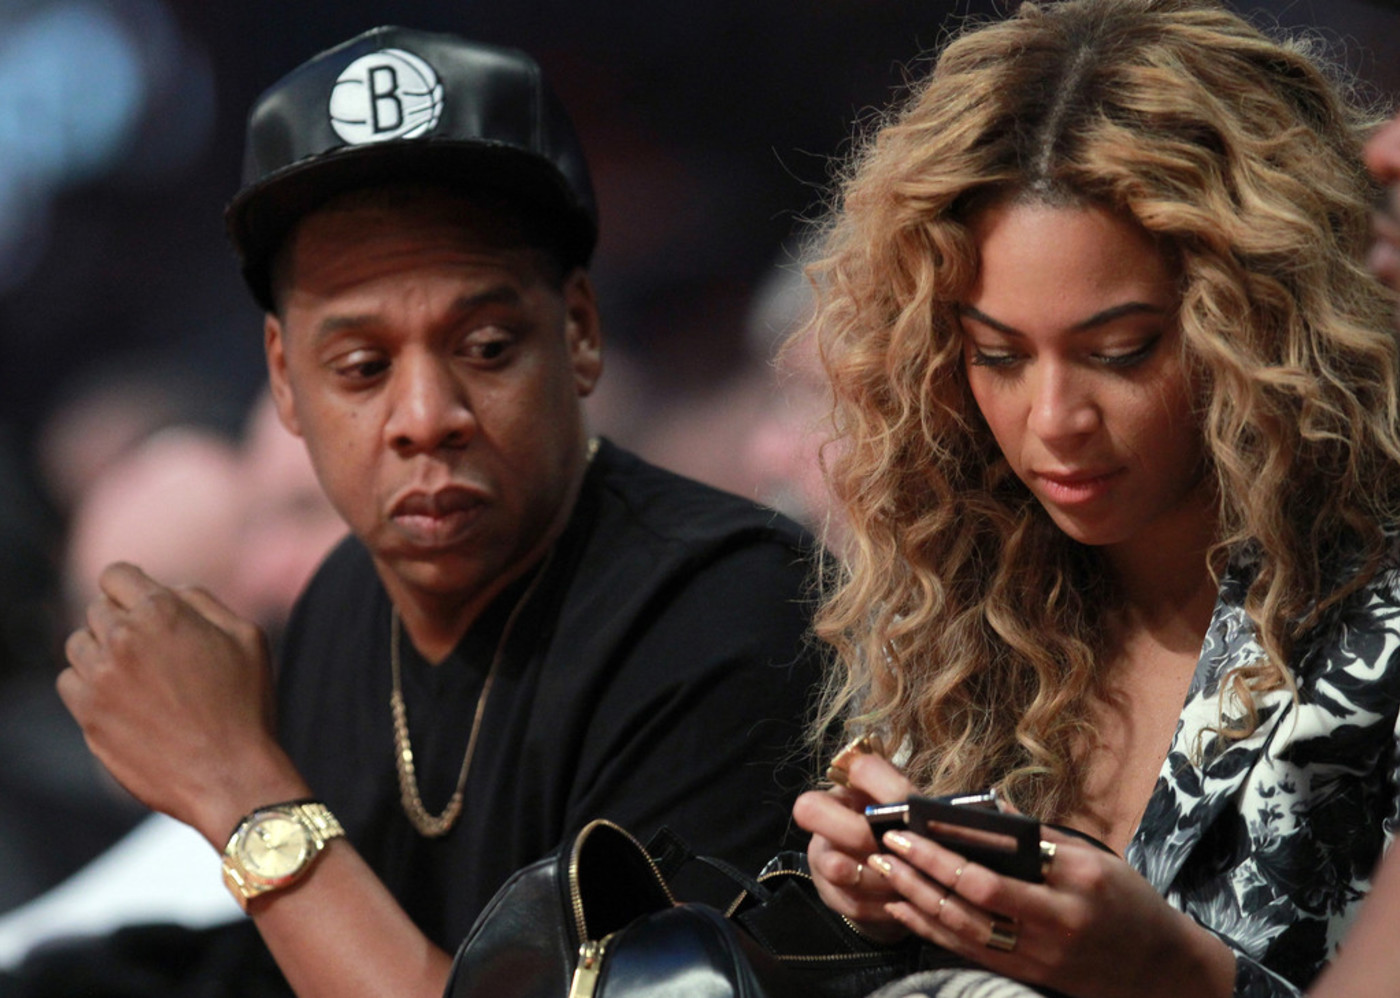 Is Jay-Z older than Beyoncé?